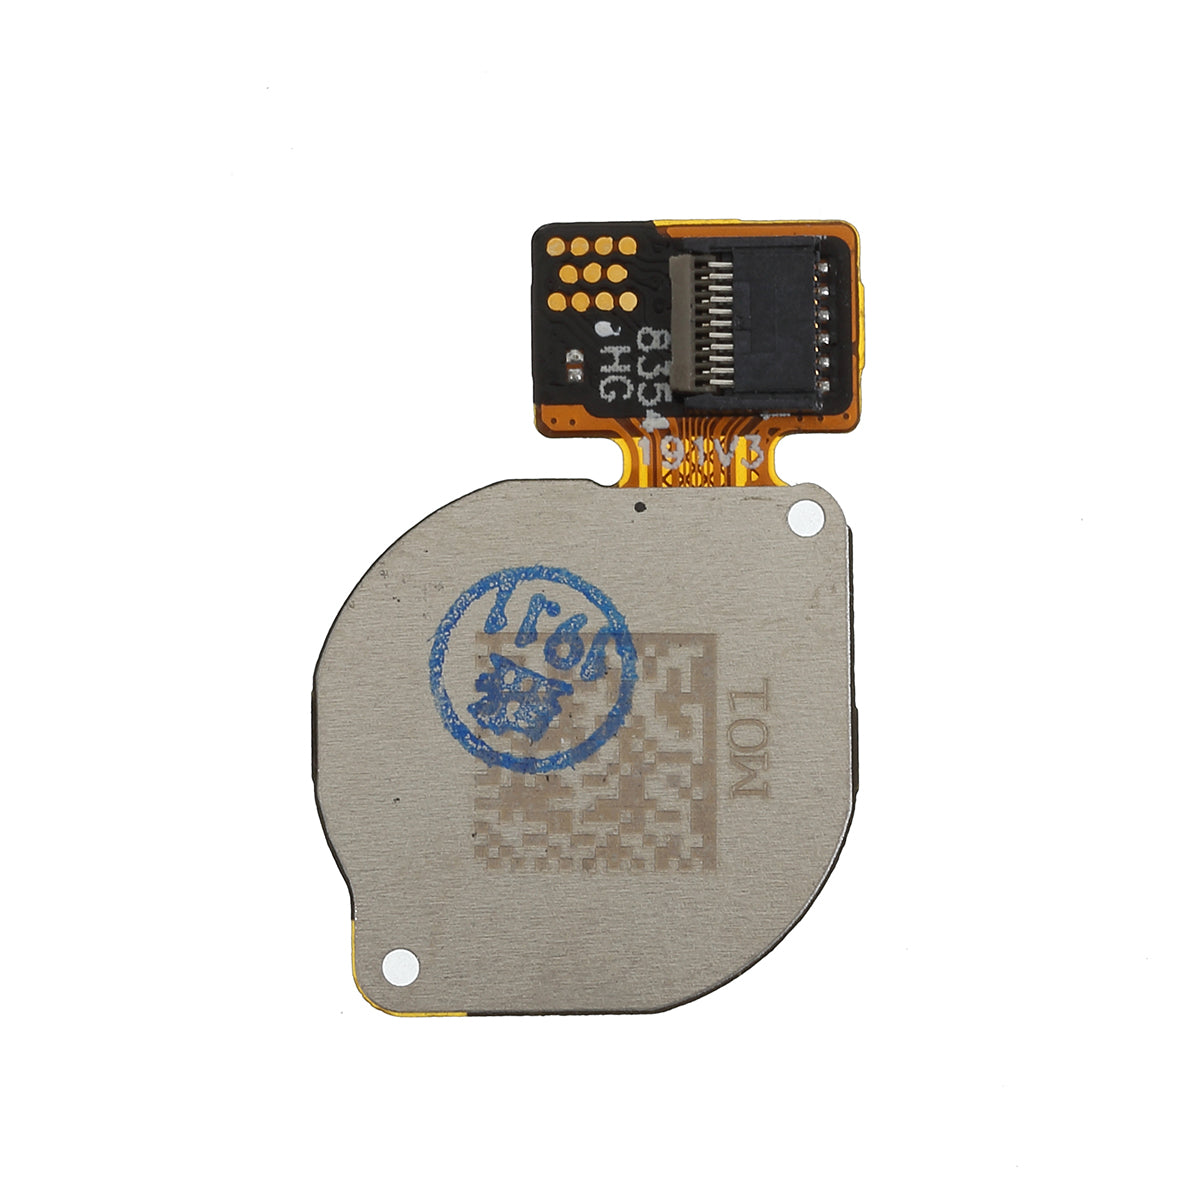 OEM Home Key Fingerprint Button Flex Cable for Huawei P30 Lite - Black